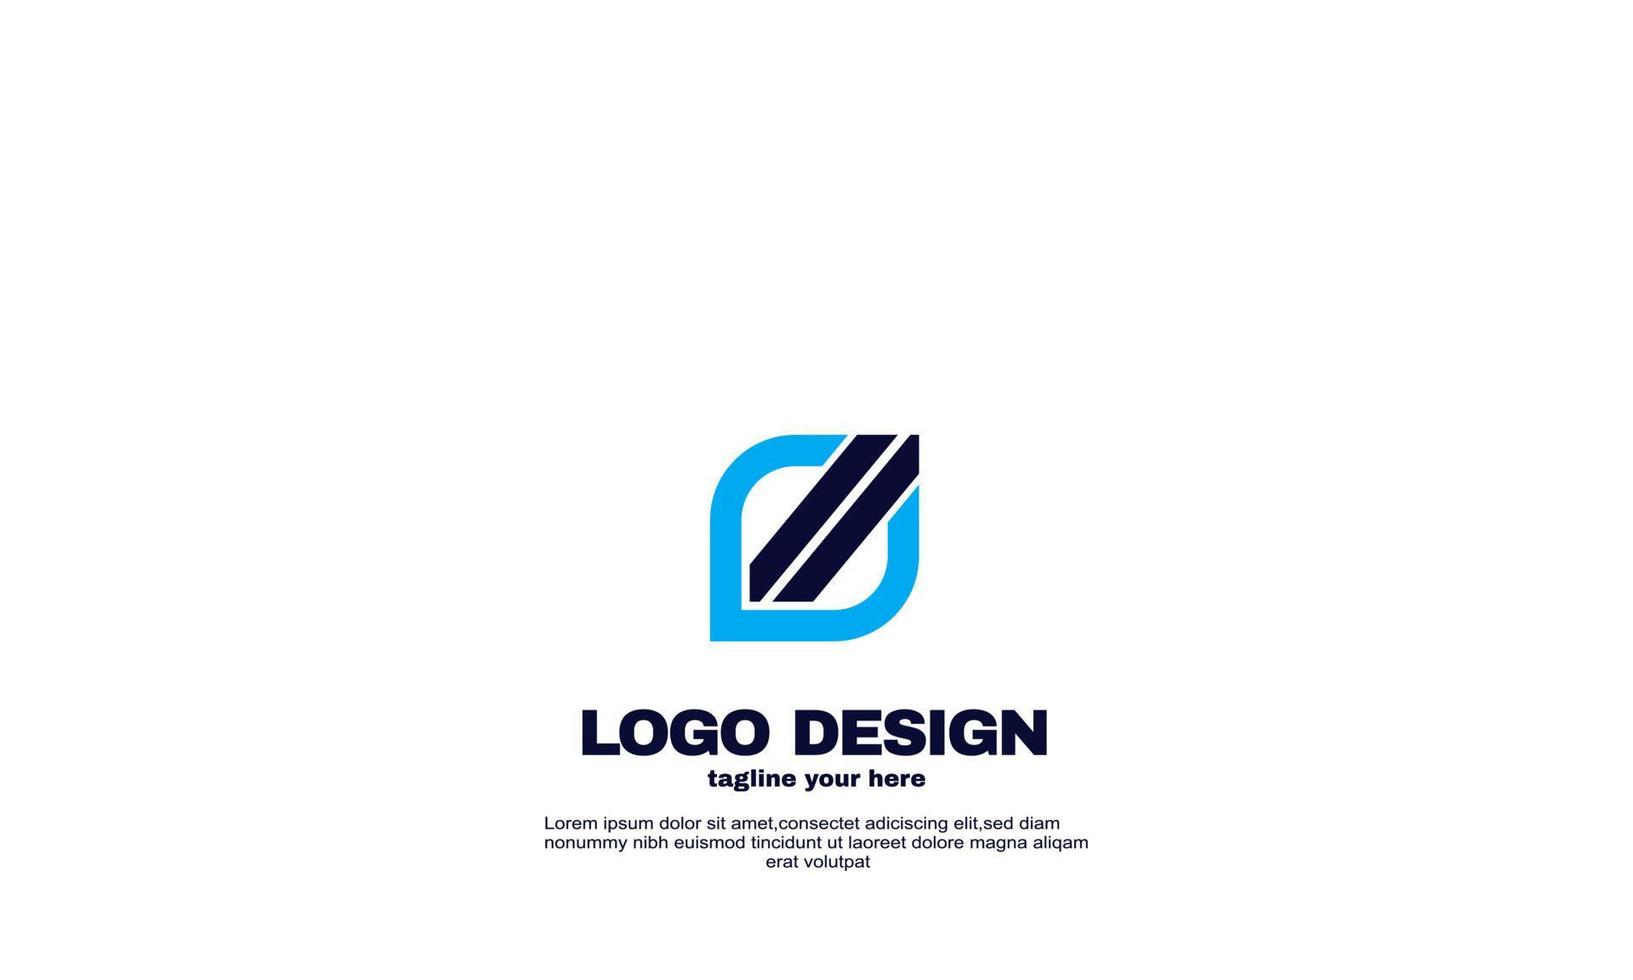 Vektor-elegantes Networking-Logo-Unternehmensgeschäfts- und Branding-Design-Vorlage vektor